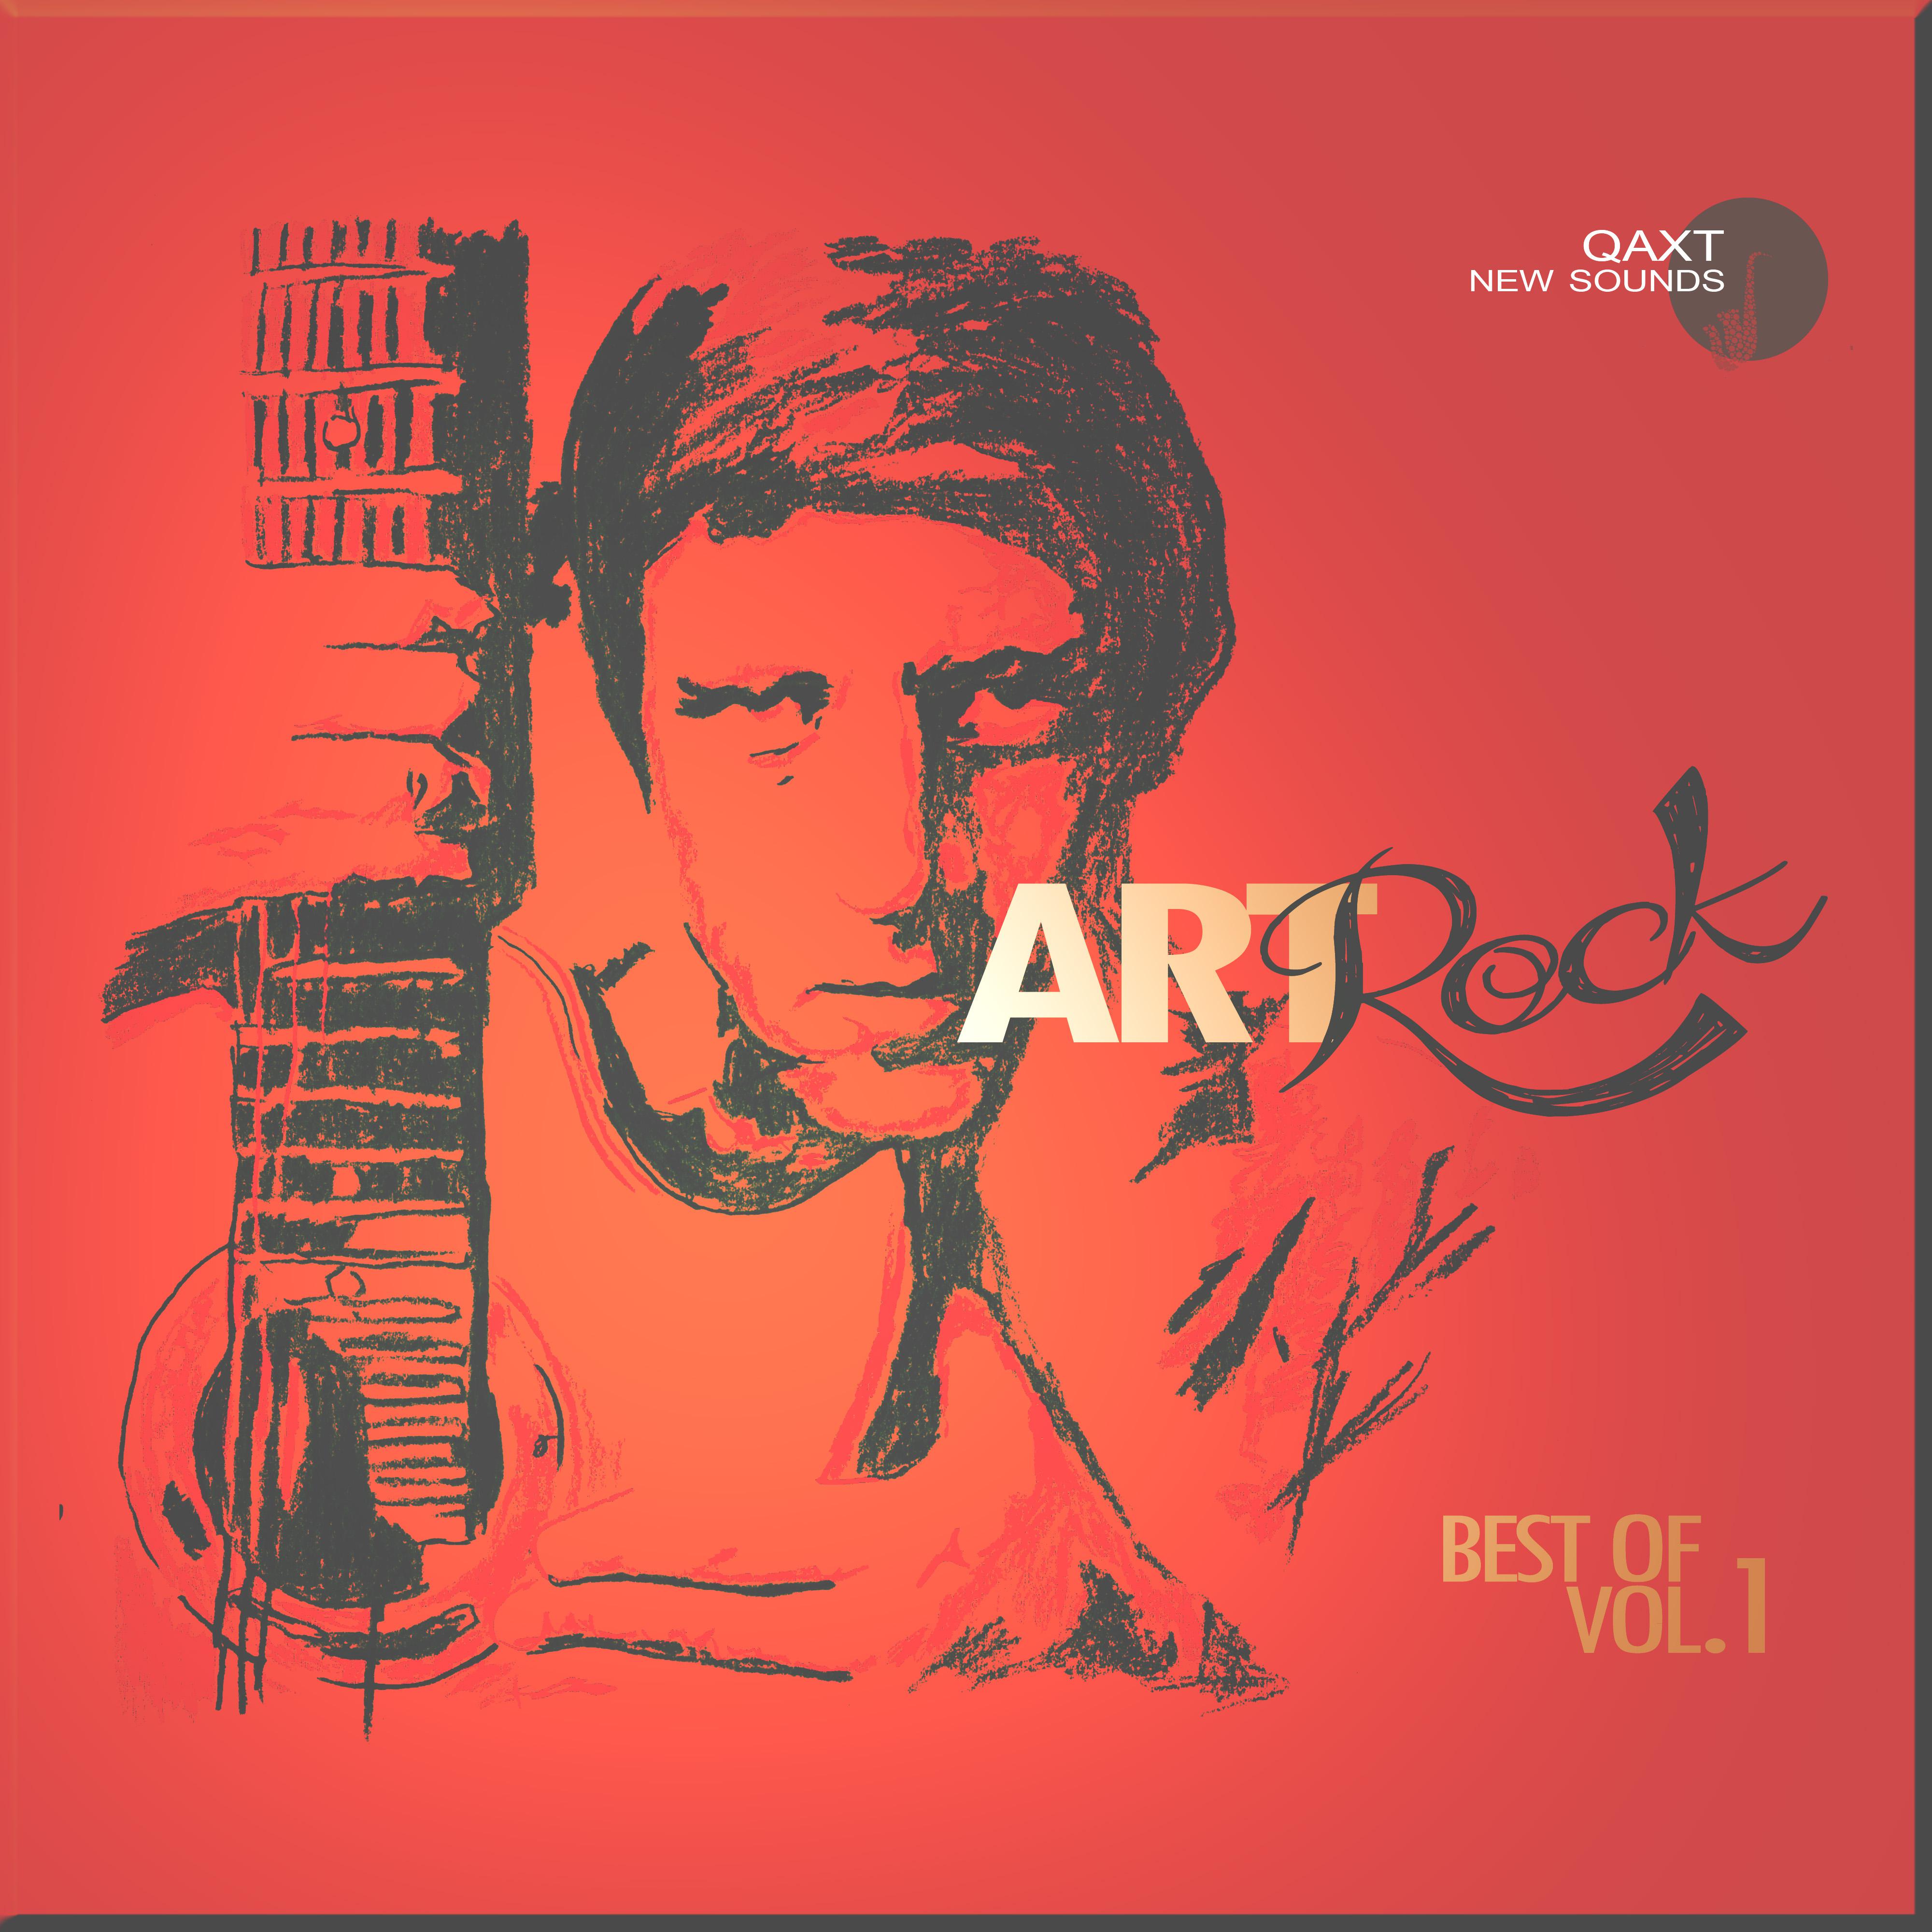 Art Rock: Best Of, Vol. 1 (QAXT New Sounds)